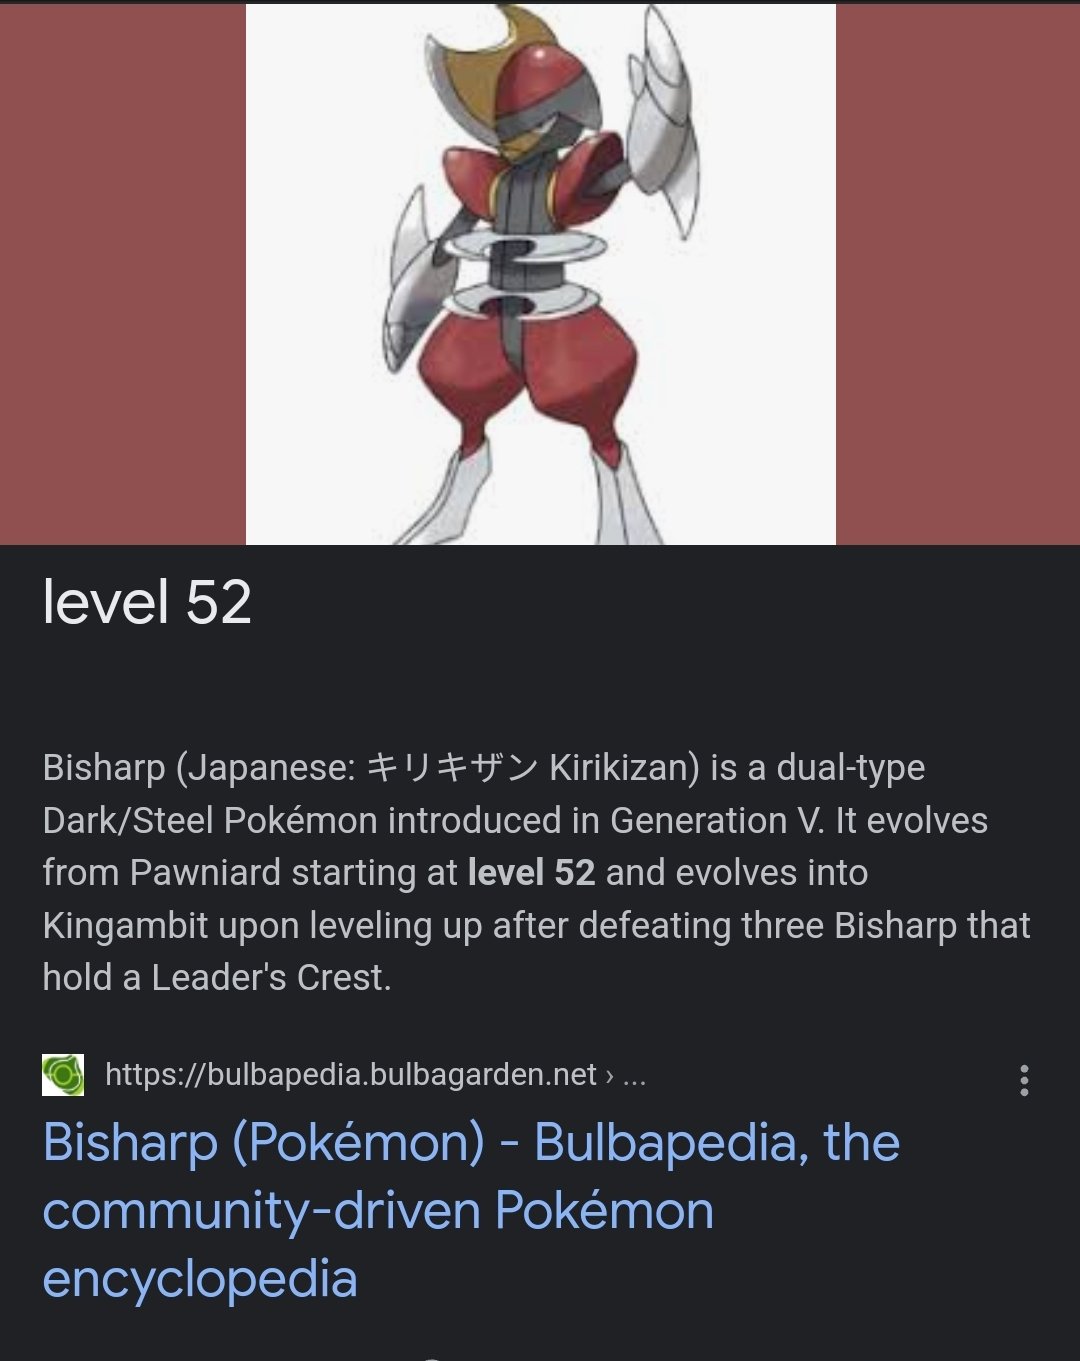 Pseudo-legendary Pokémon - Bulbapedia, the community-driven Pokémon  encyclopedia